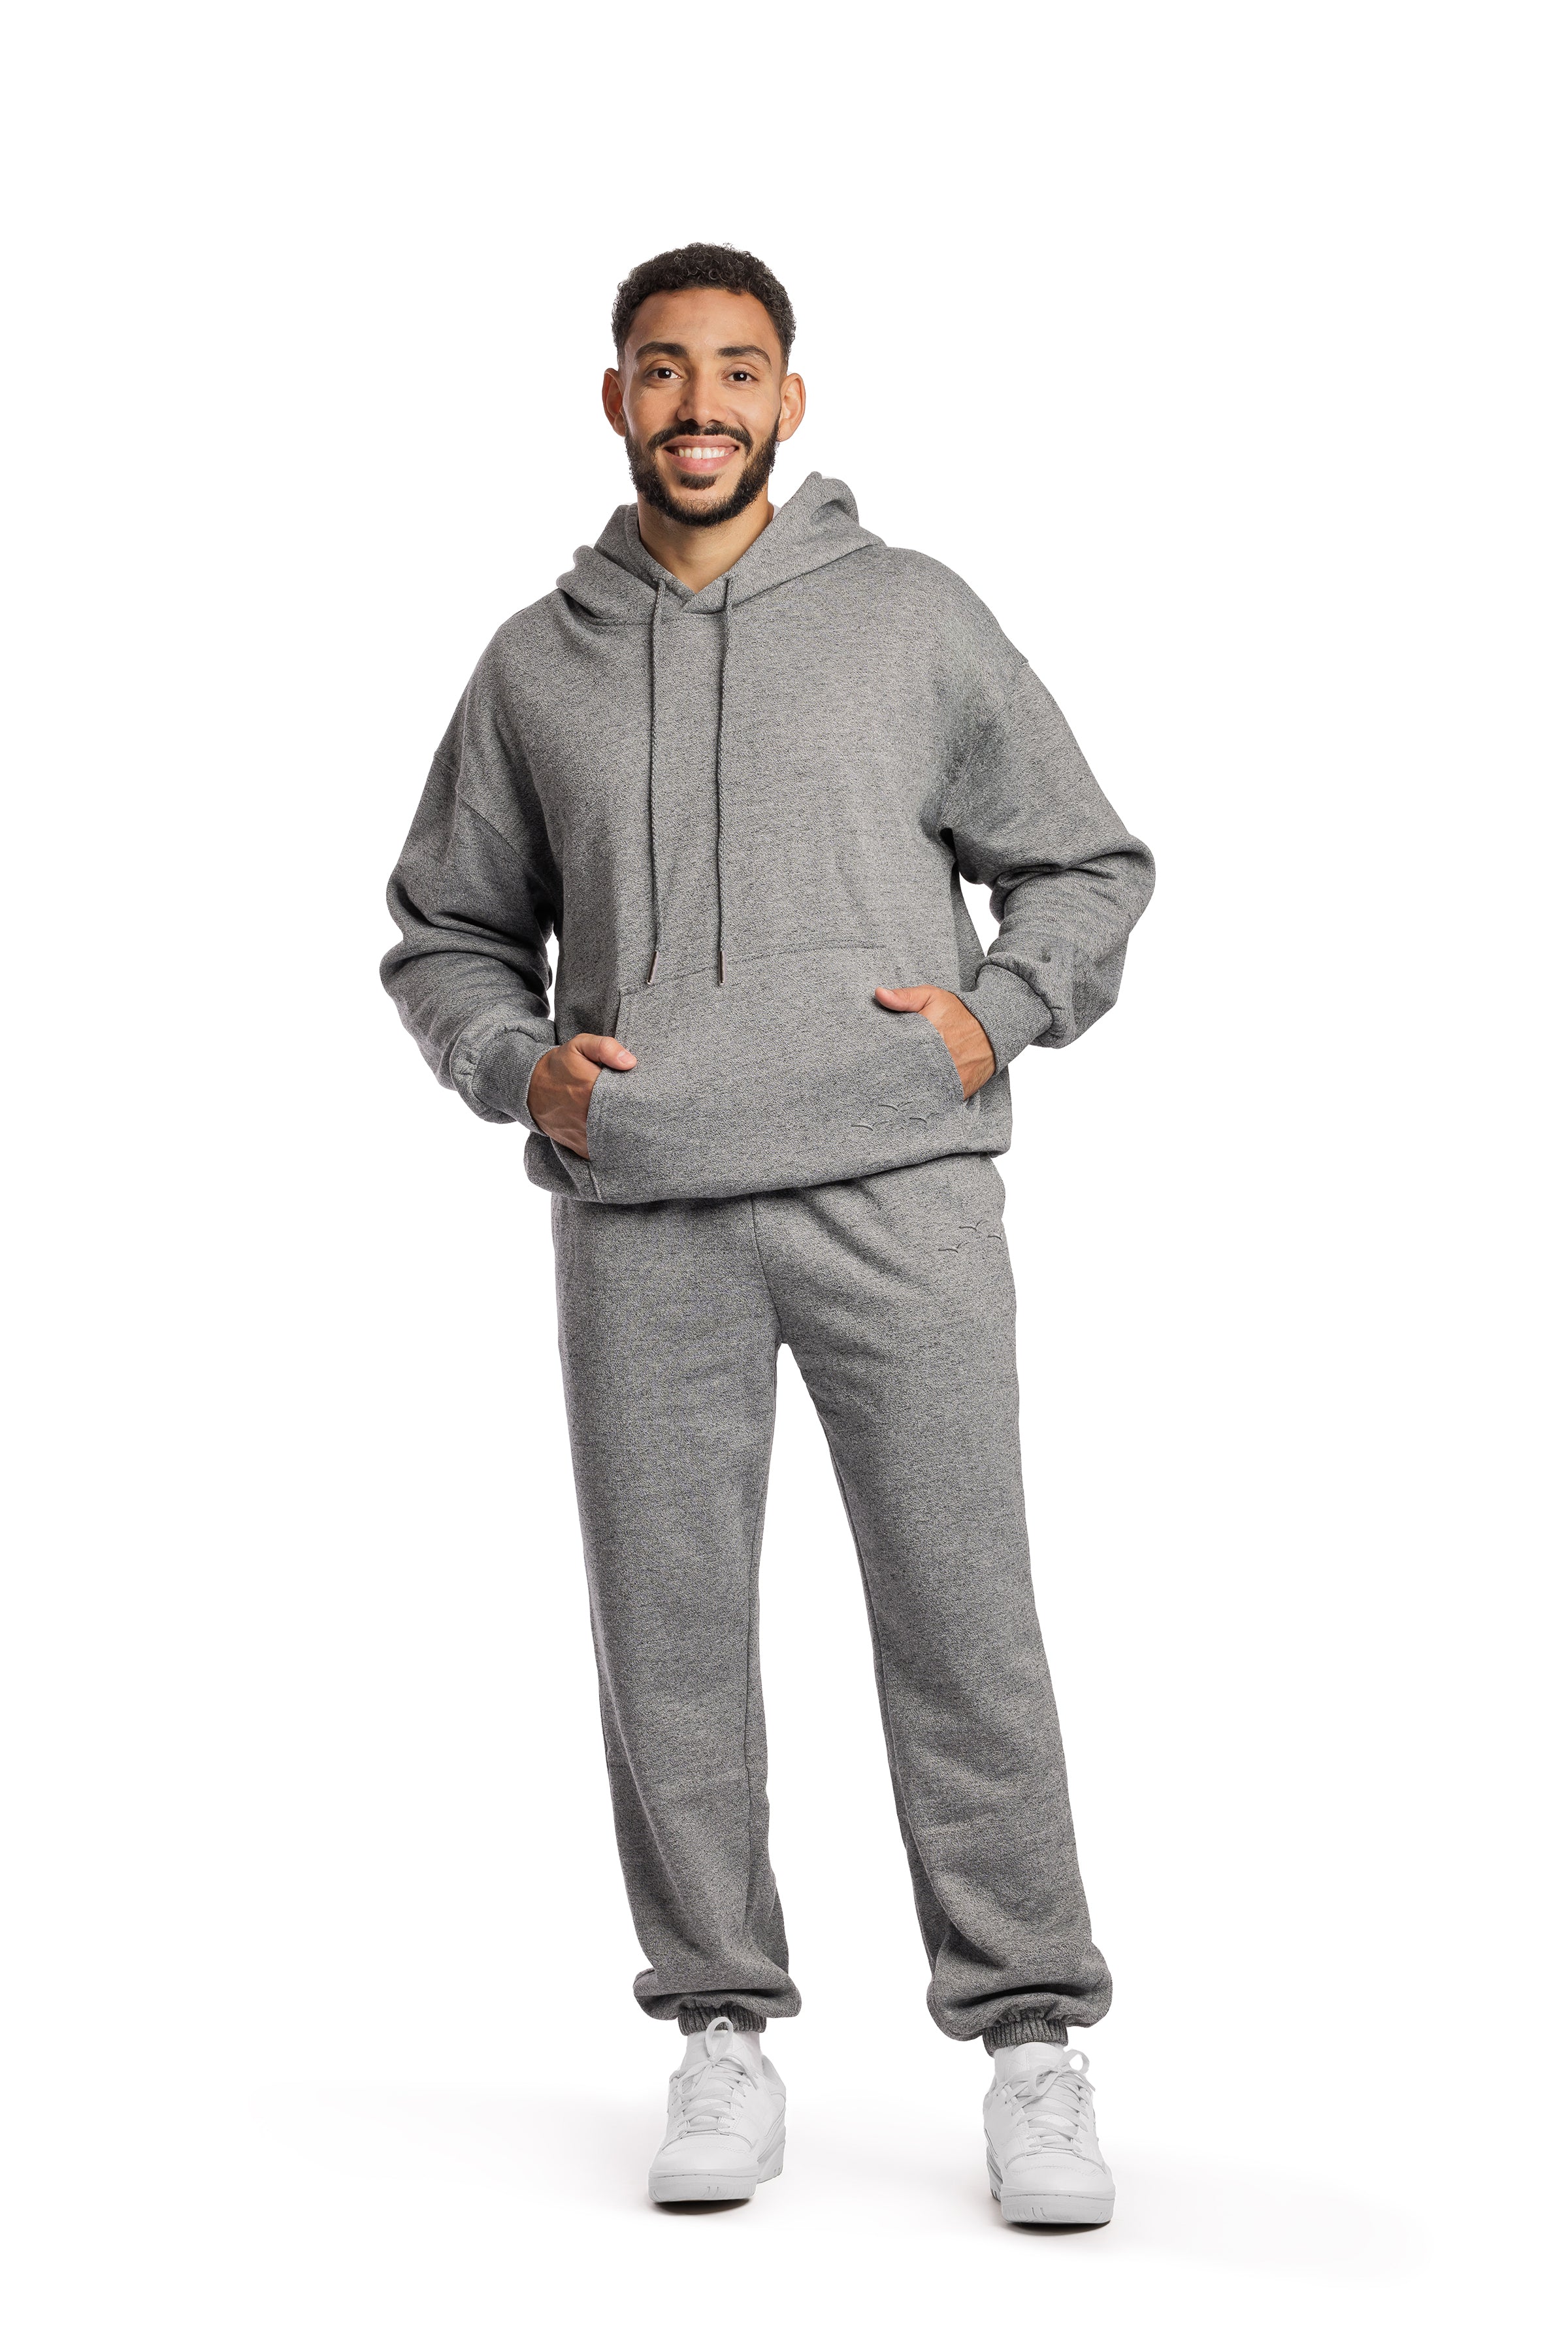 Men’s premium fleece relaxed sweatsuit set in granite